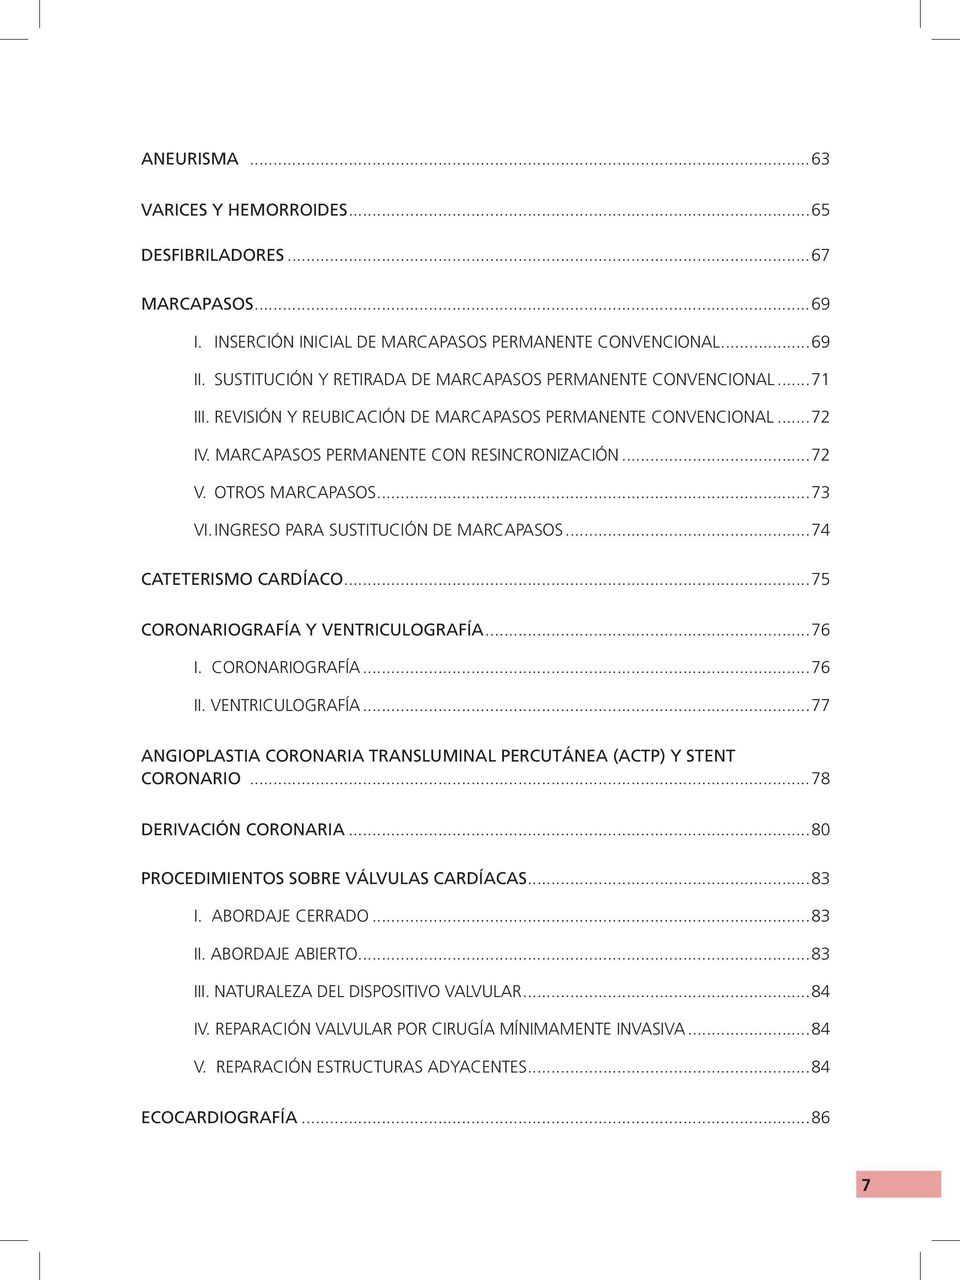 OTROS MARCAPASOS...73 VI. INGRESO PARA SUSTITUCIÓN DE MARCAPASOS...74 CATETERISMO CARDÍACO...75 CORONARIOGRAFÍA Y VENTRICULOGRAFÍA.